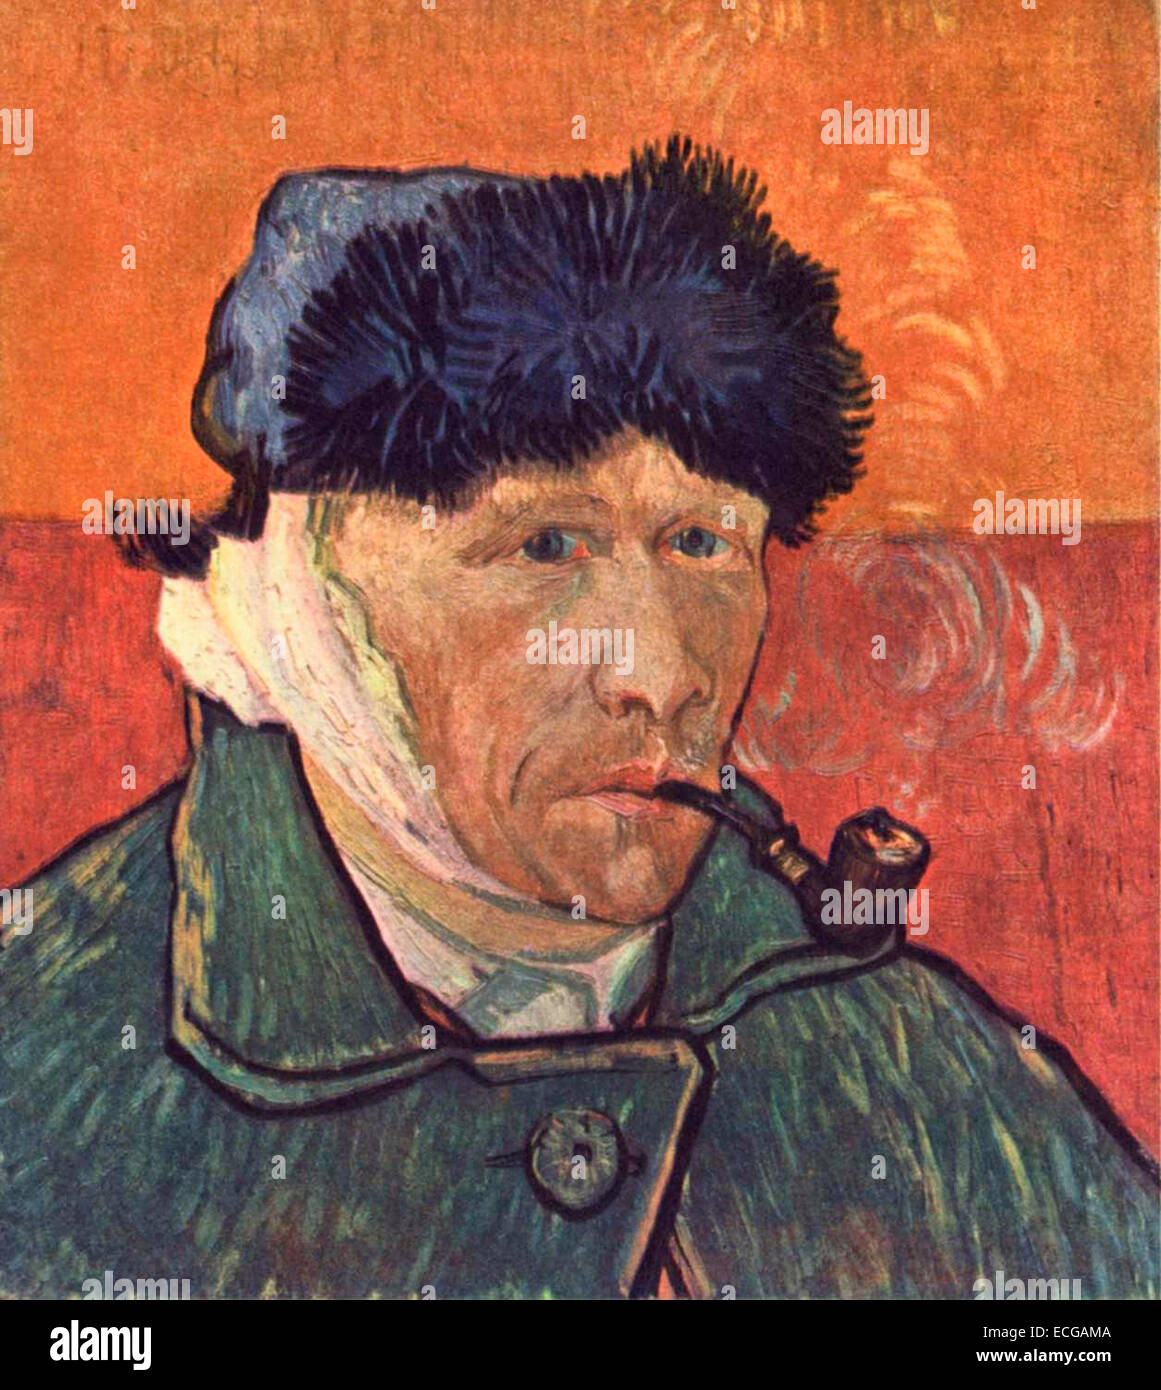 Self-portrait, 1889, Vincent Van Gogh Stock Photo